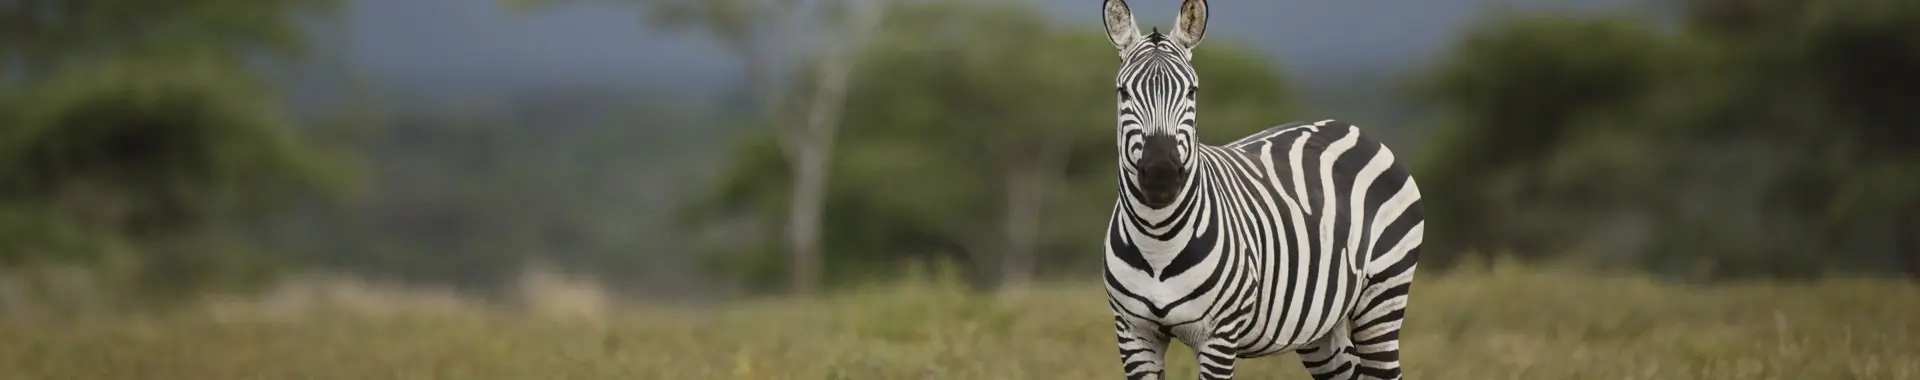 Zebra safaris in Tansania